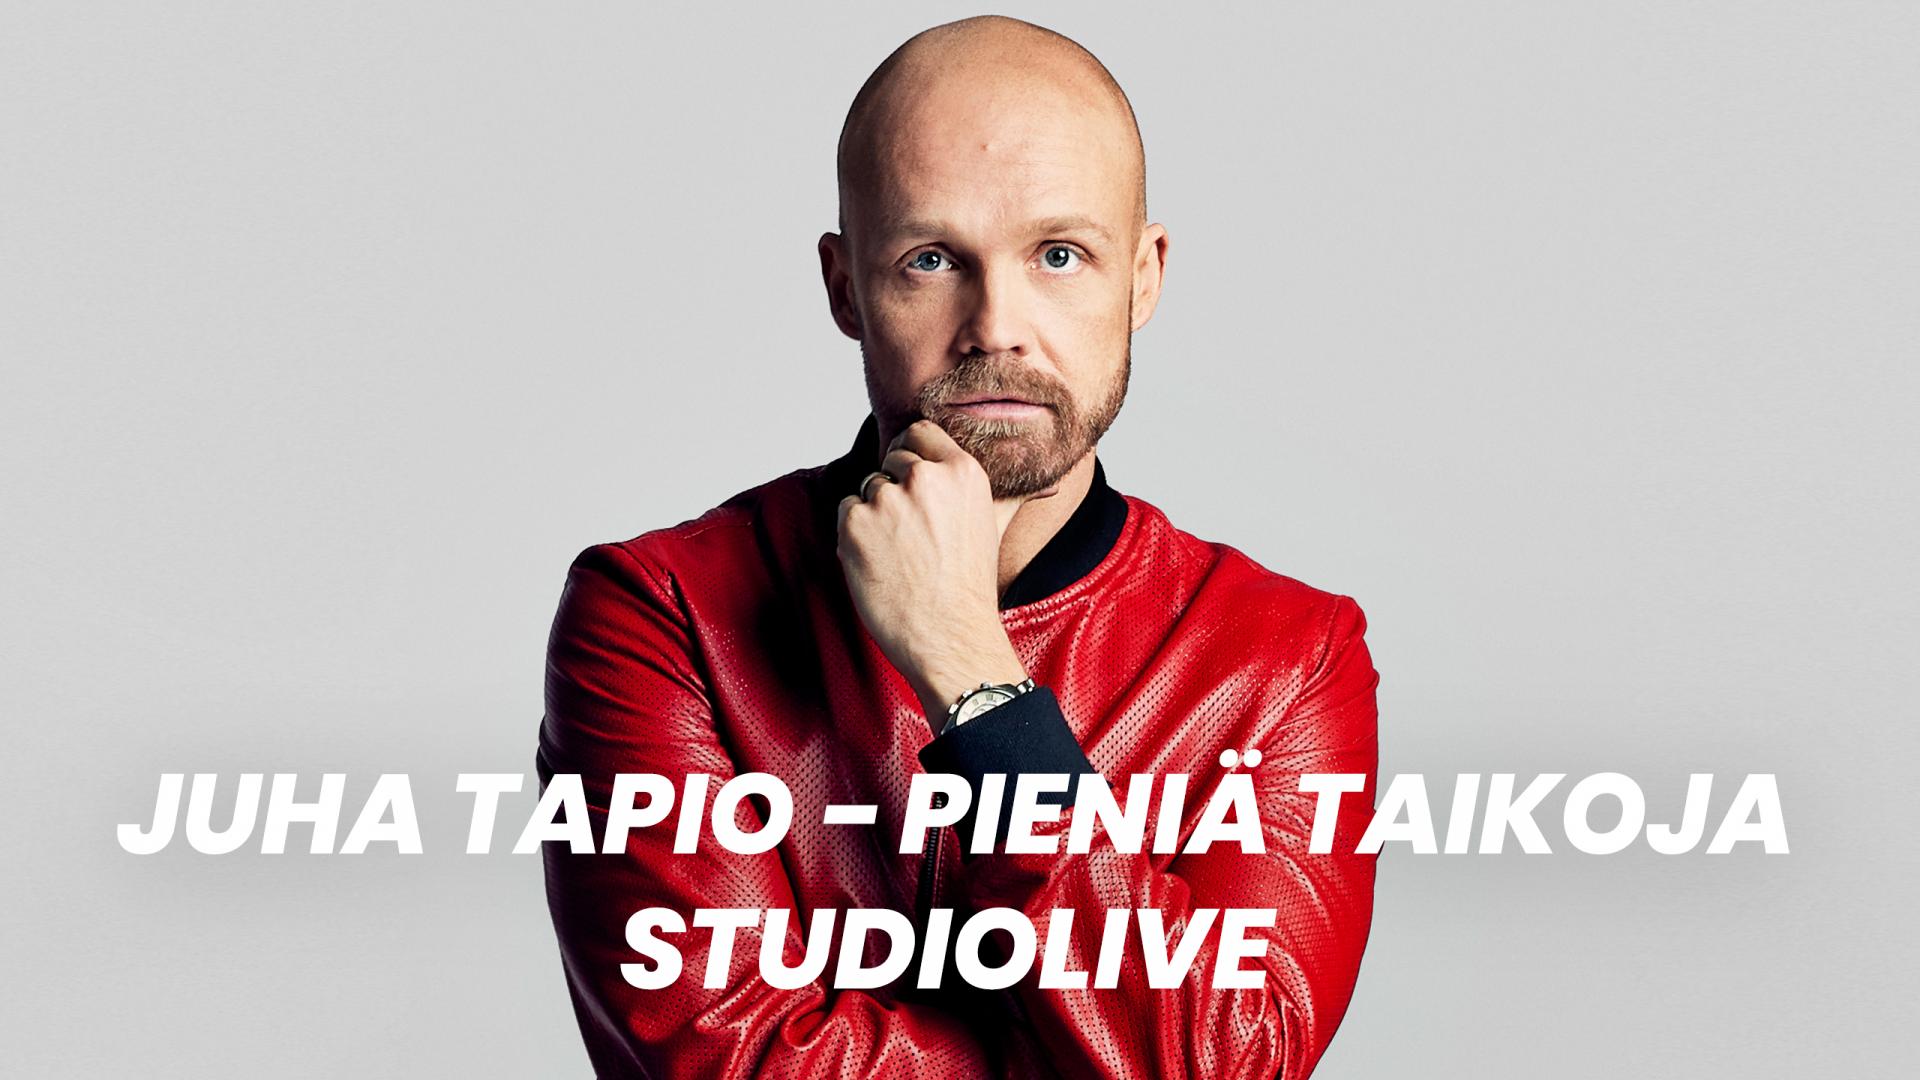 Juha Tapio - Pieniä taikoja studiolive | Ruutu